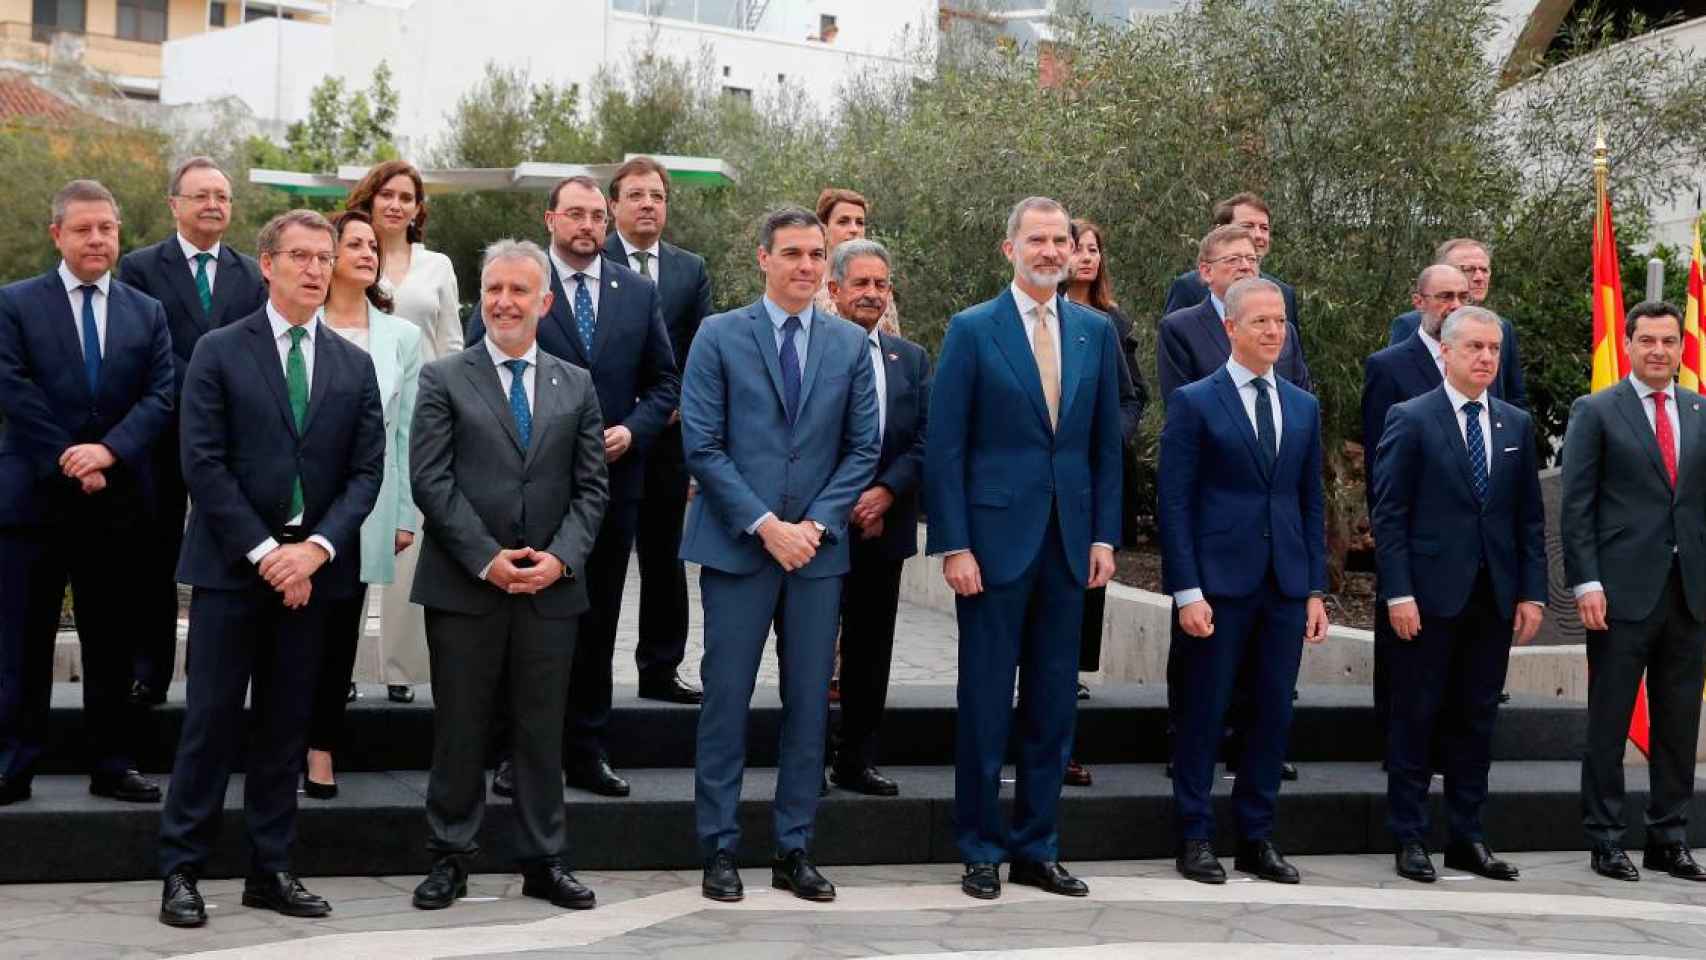 Los presidentes de las CCAA (excepto Pere Aragonès) posan junto al Rey / EFE